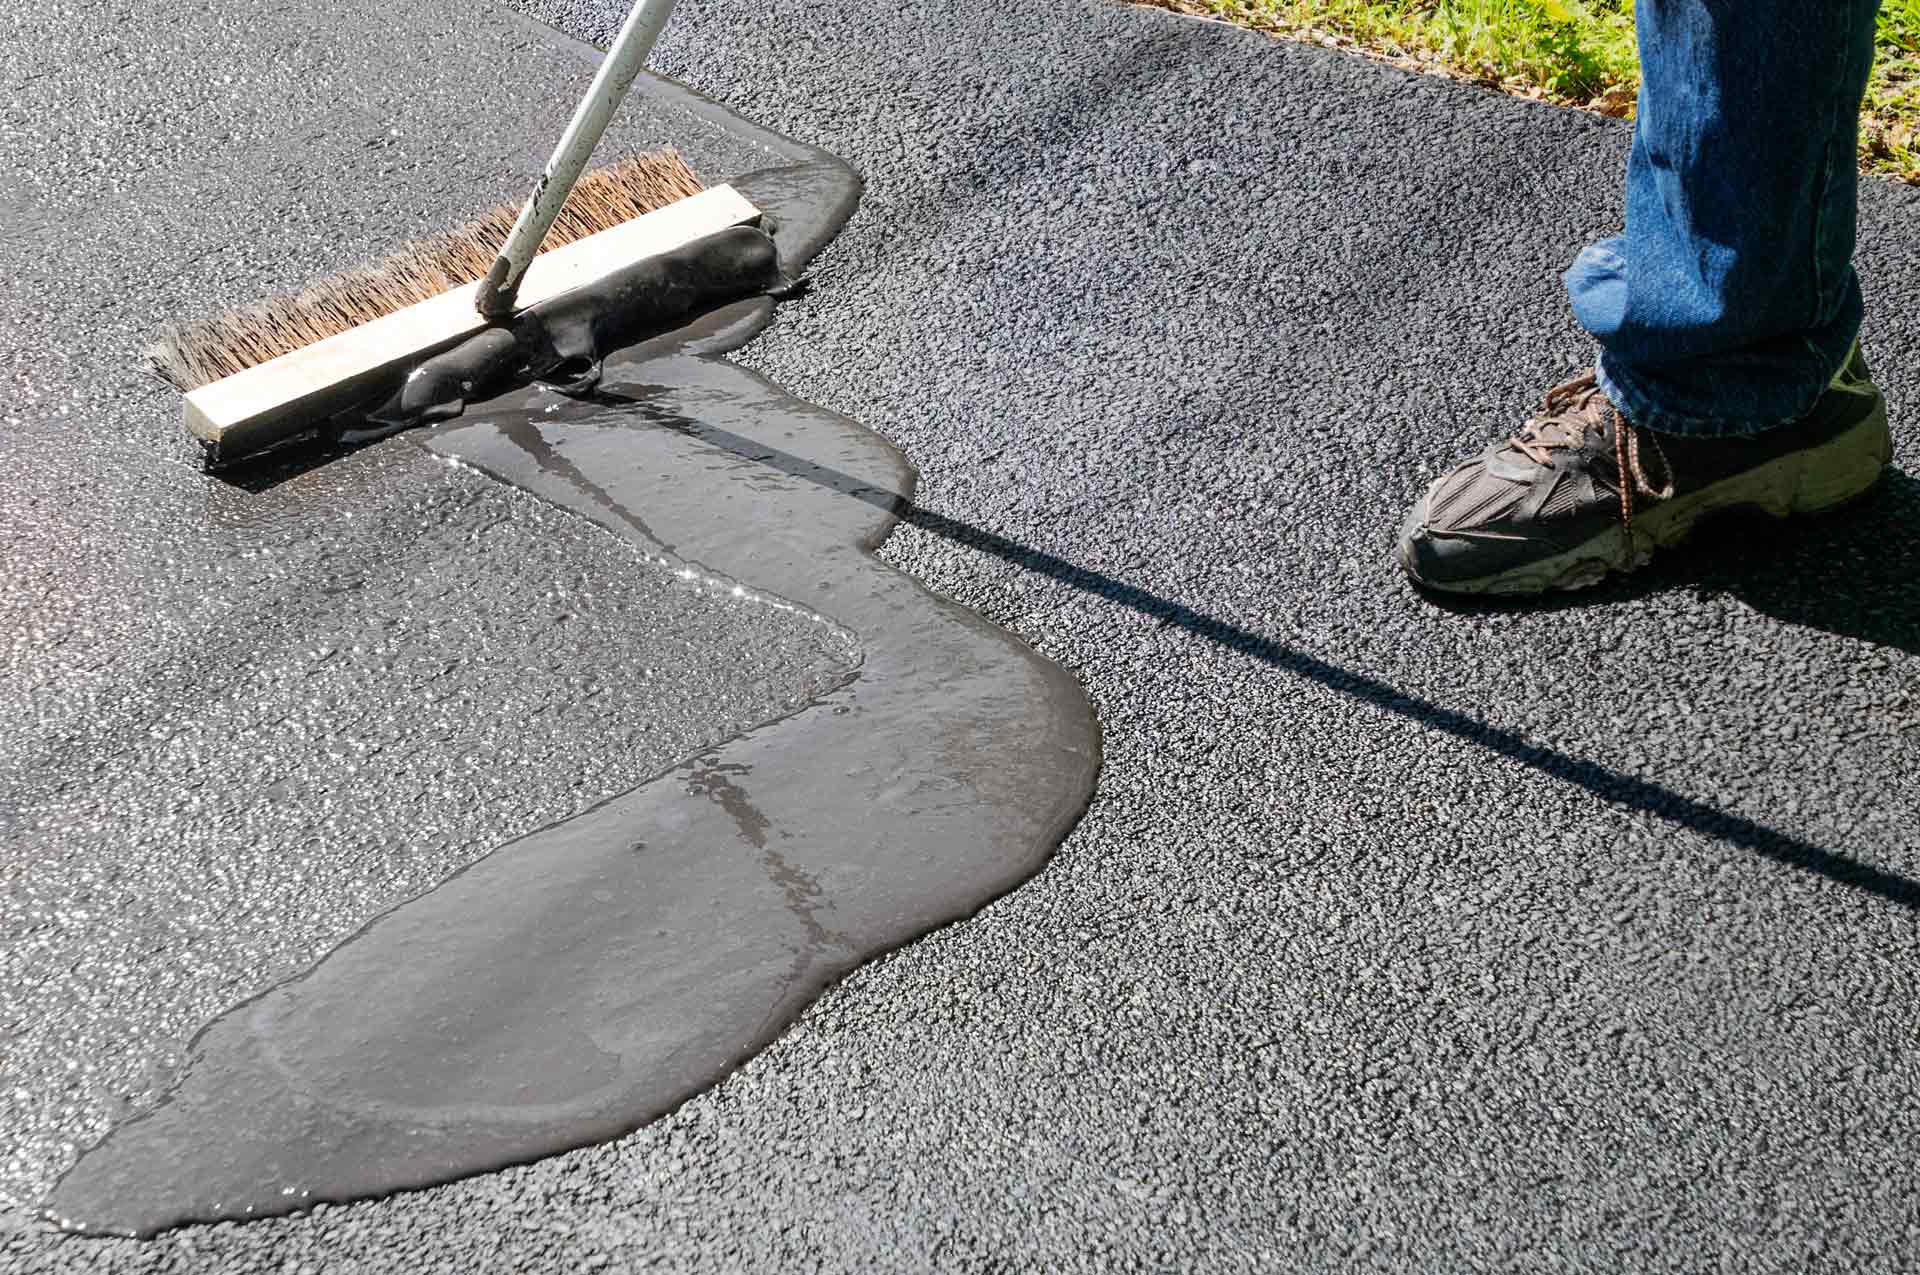 Spreading asphalt resealer onto driveway for maintenance